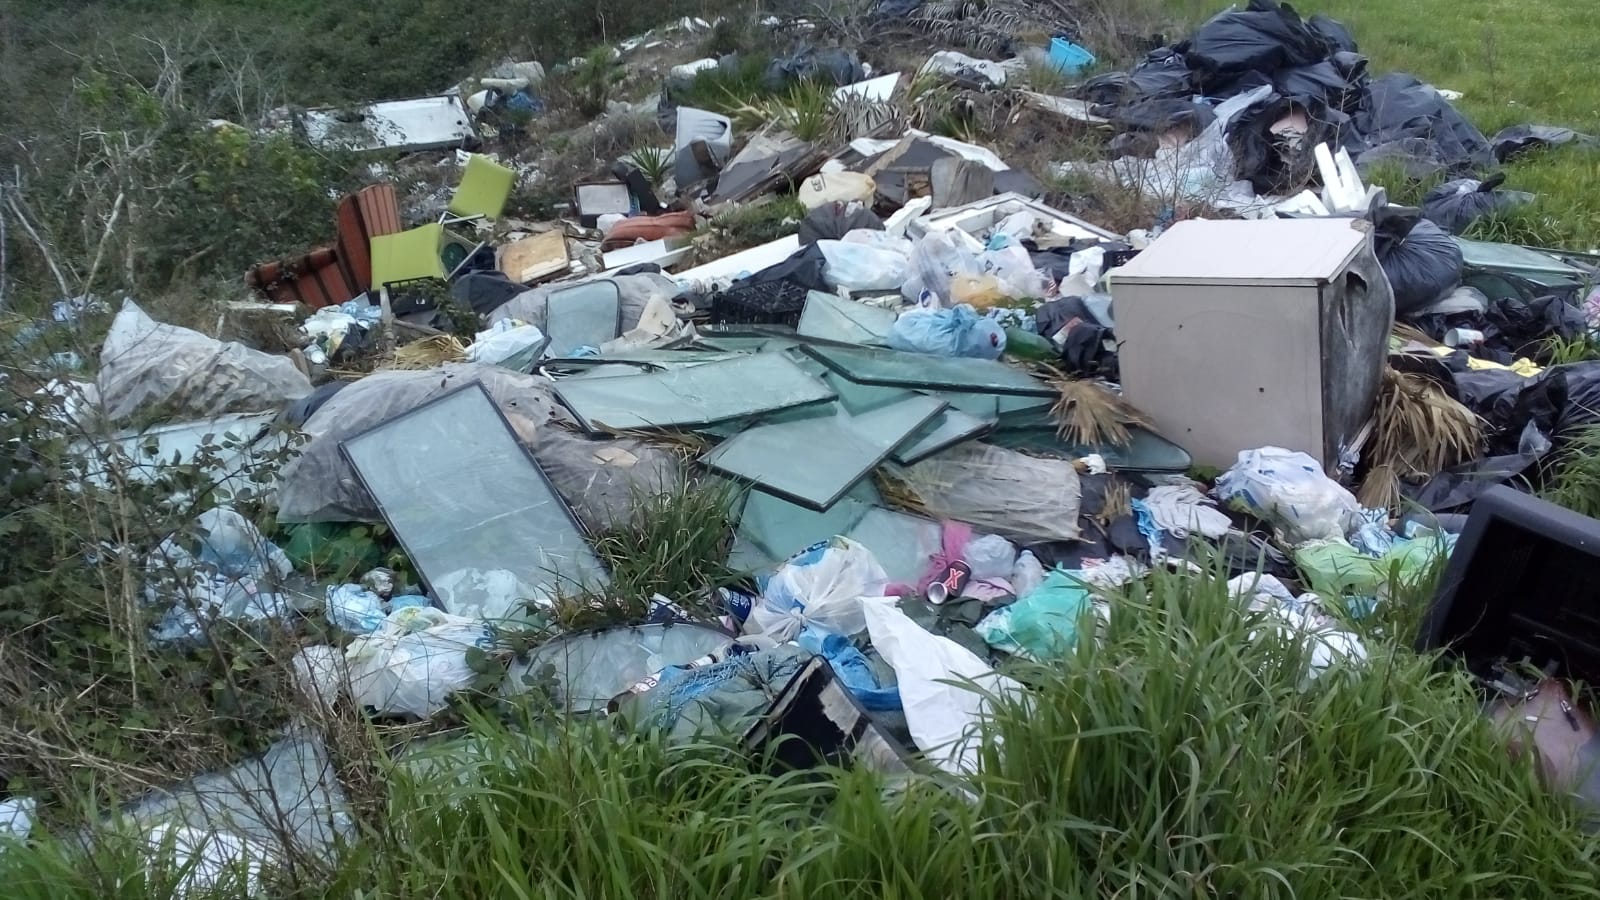 Varcaturo: sversamento illegale di rifiuti scoperto grazie a un drone